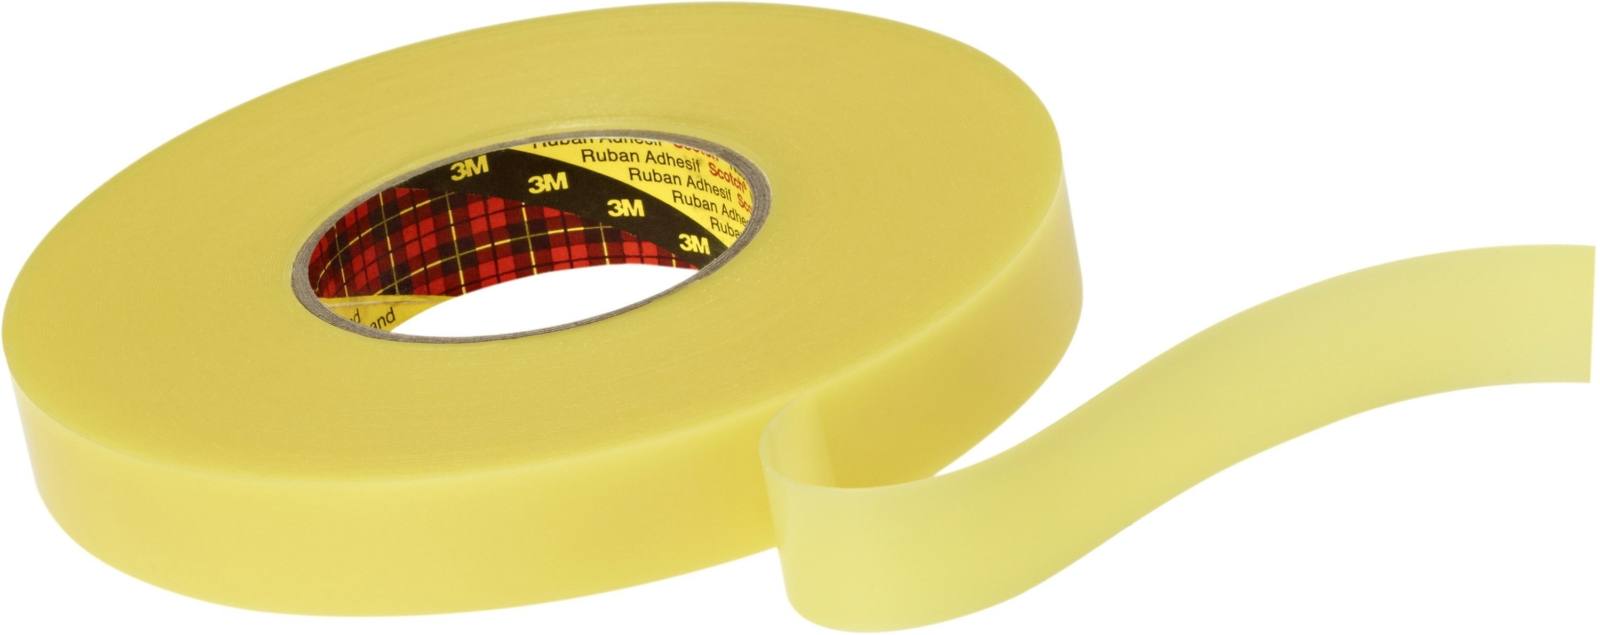 3M Dubbelzijdig verwijderbaar plakband 4656F, geel, 15 mm x 33 m, 0,6 mm